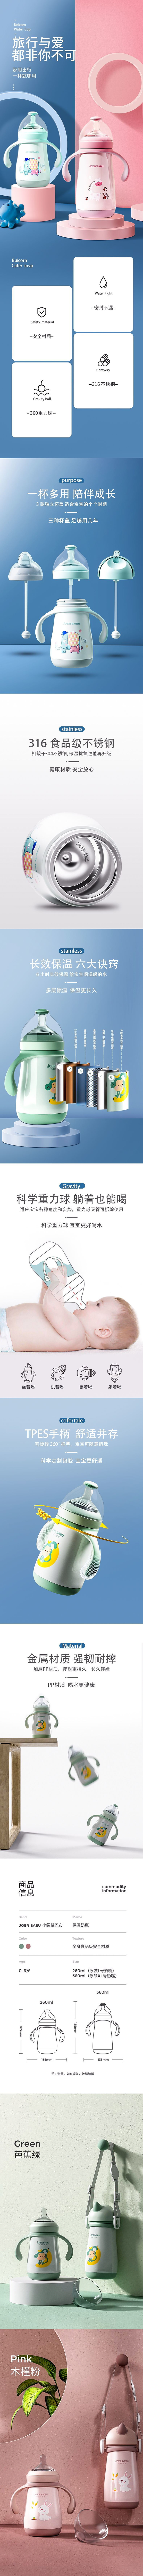 淘宝美工刘湾湾母婴婴儿用品详情页设计作品